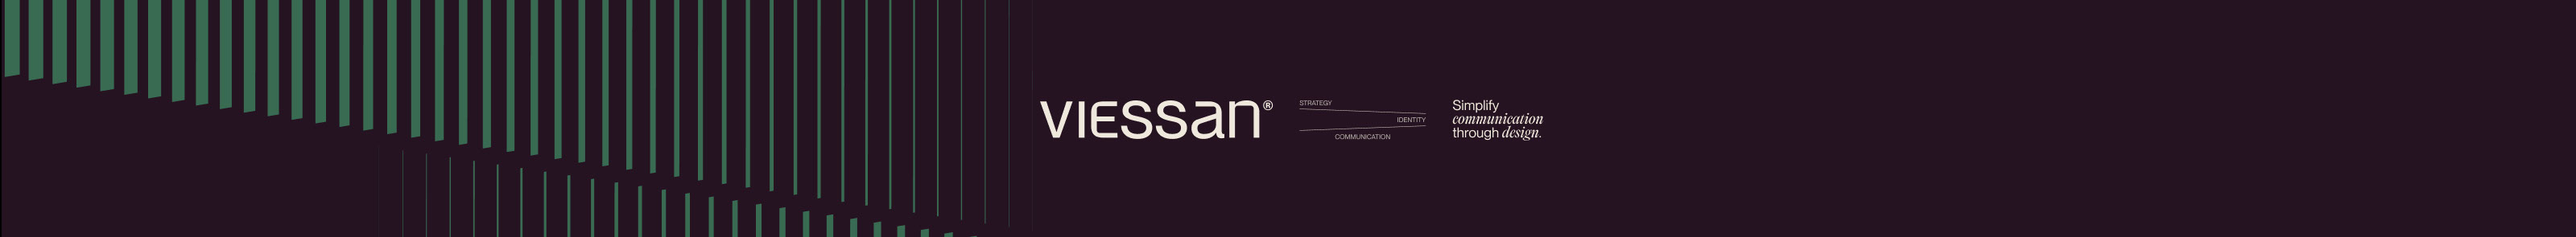 Baner profilu użytkownika Viessan Studio